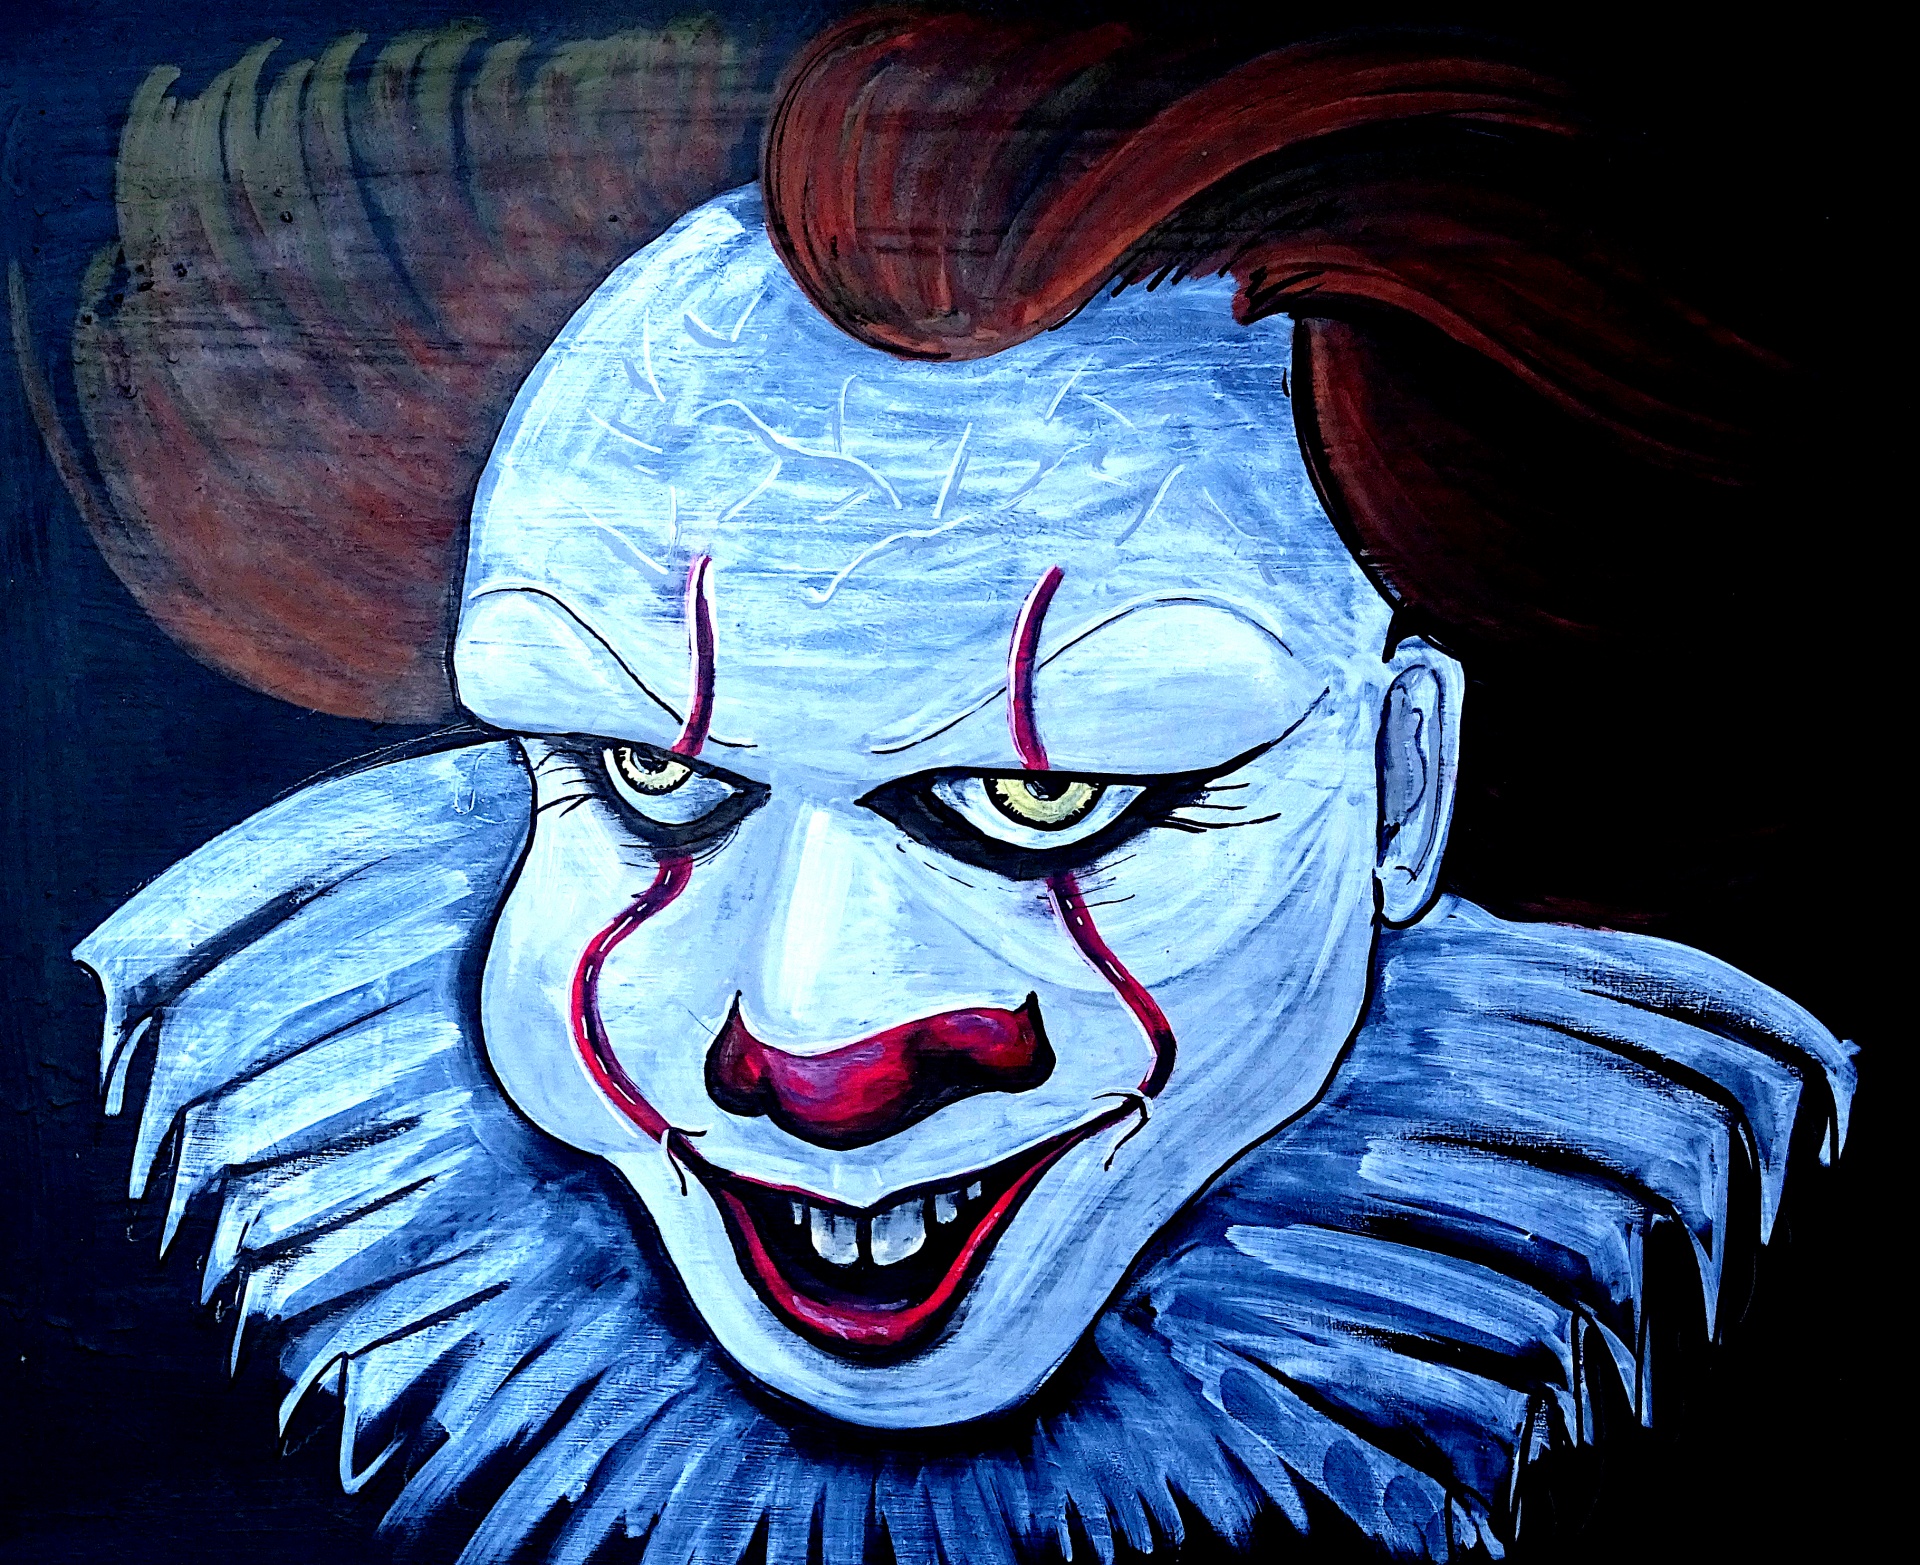 Artists Evil Clown